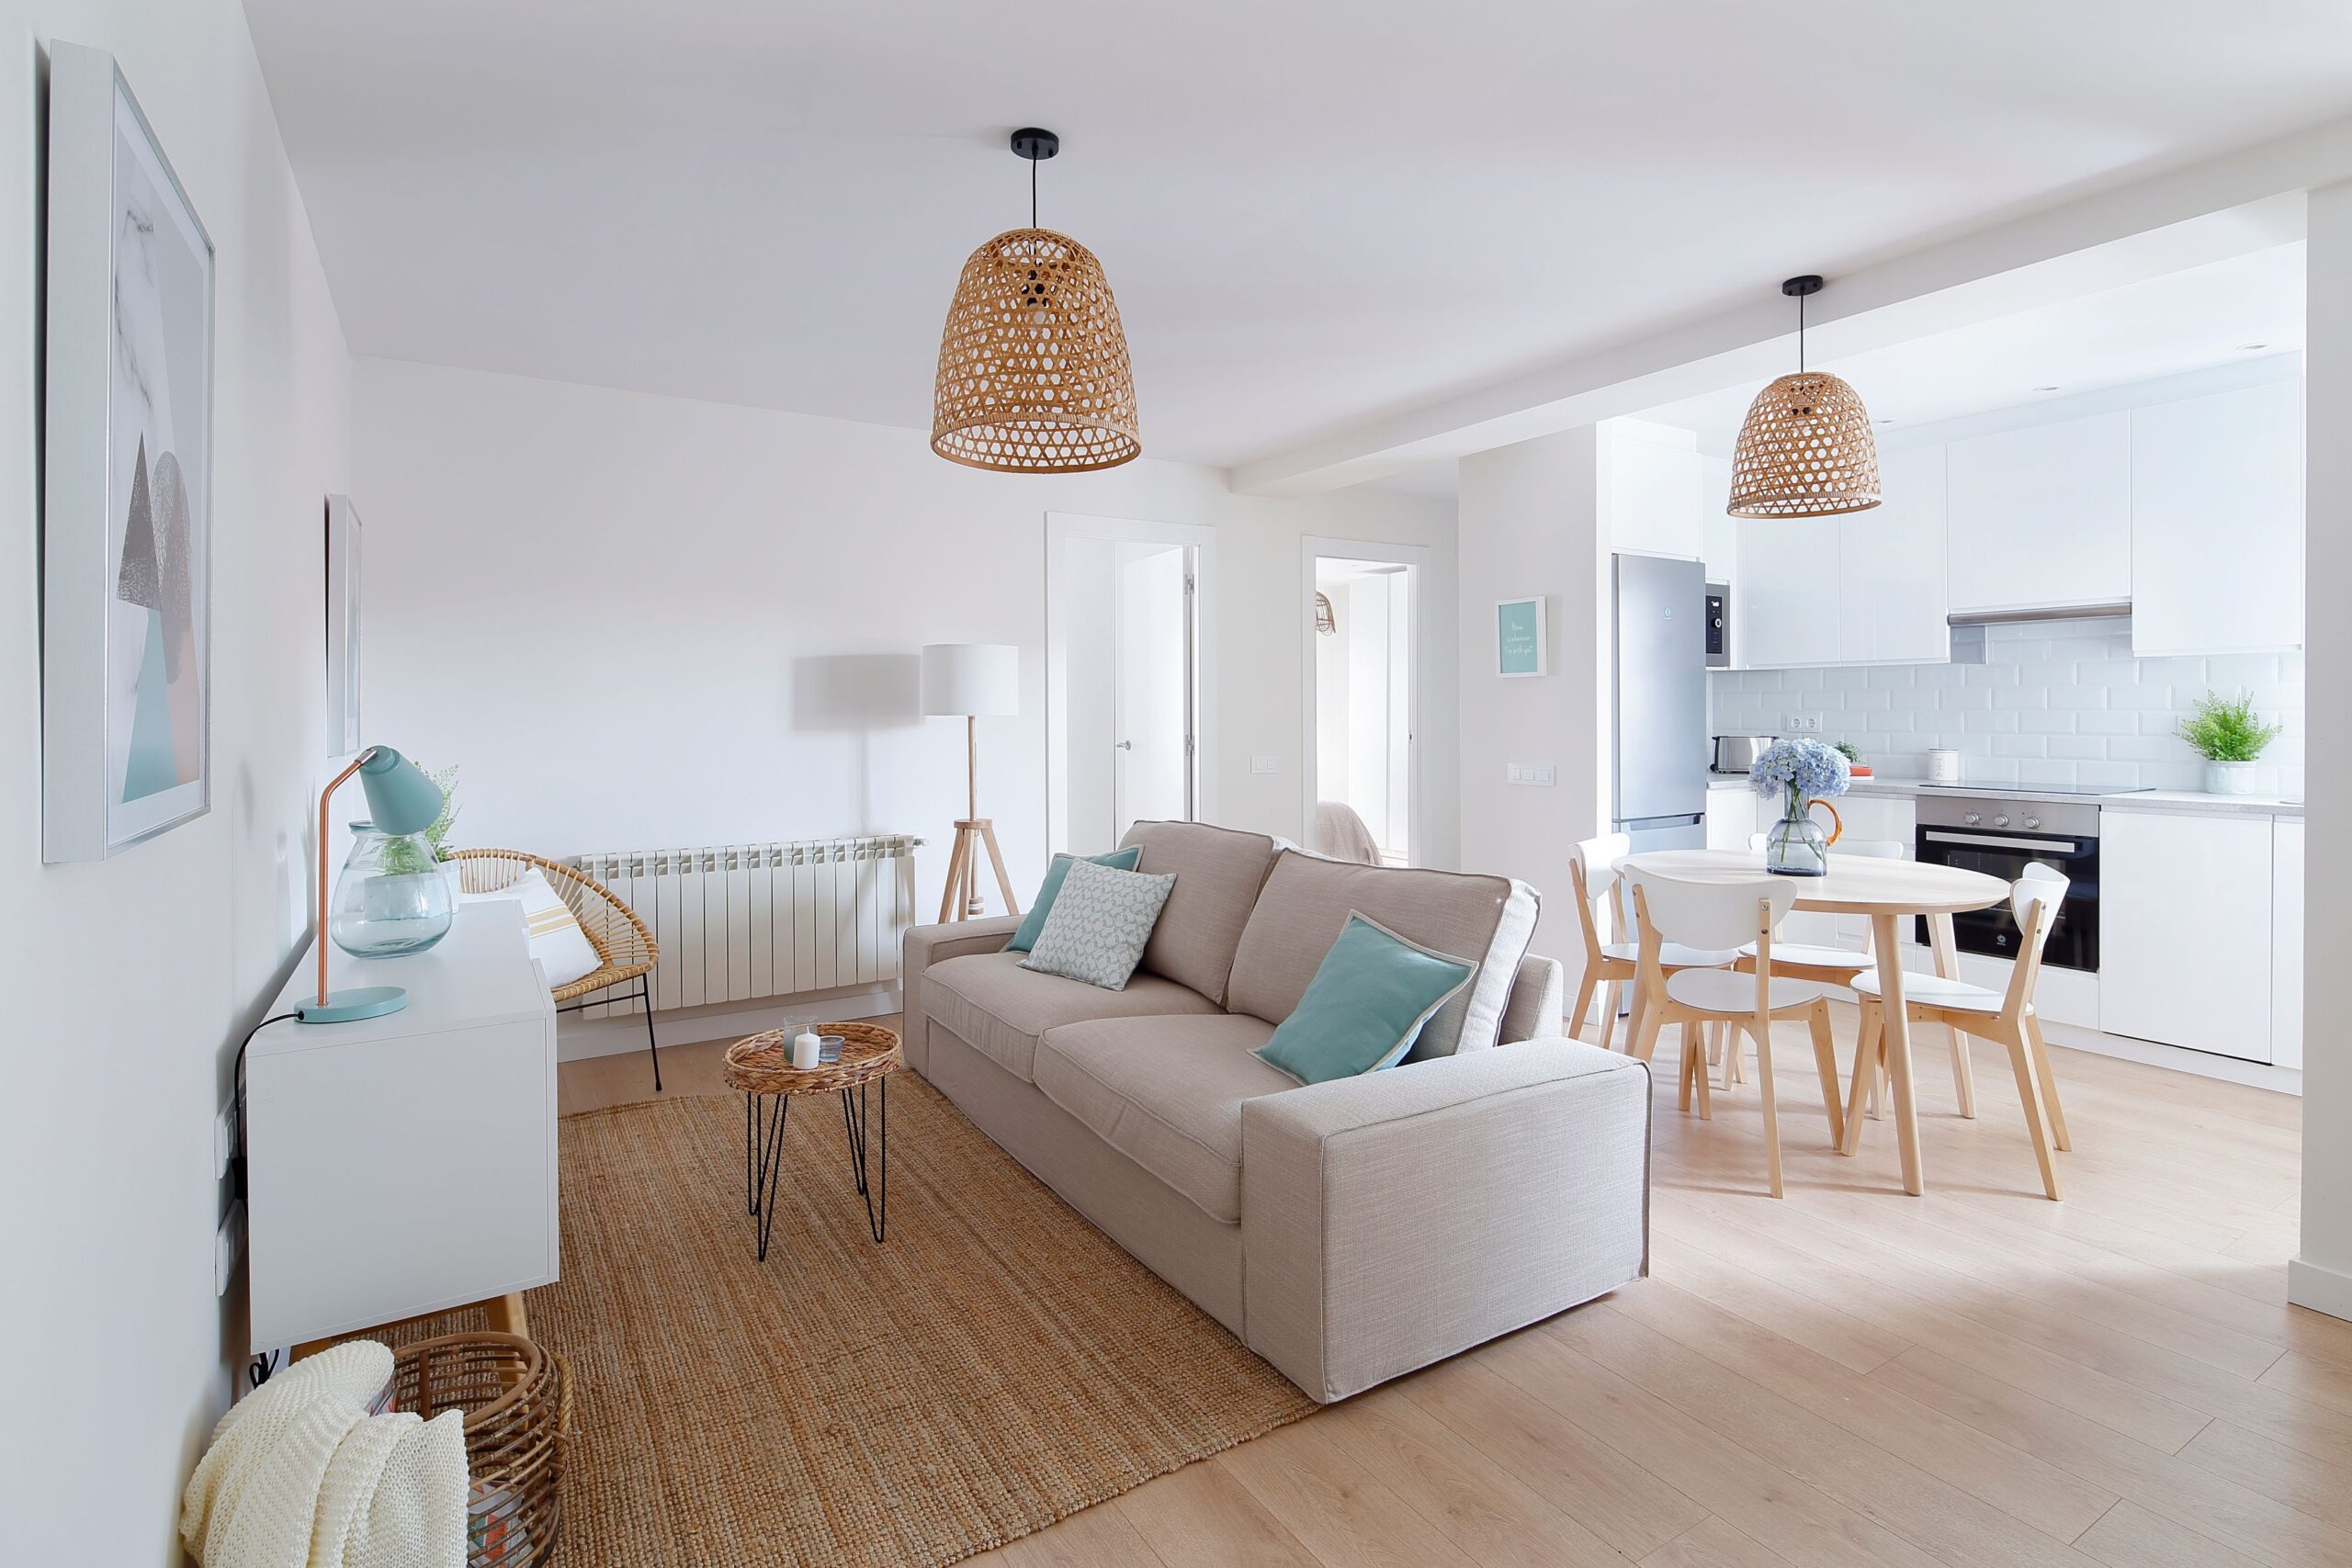 Ejemplo de sala de estar de un apartamento o piso reformado para el alquiler. Rooming Concept Alquilar vivienda de forma segura en Madrid y Barcelona